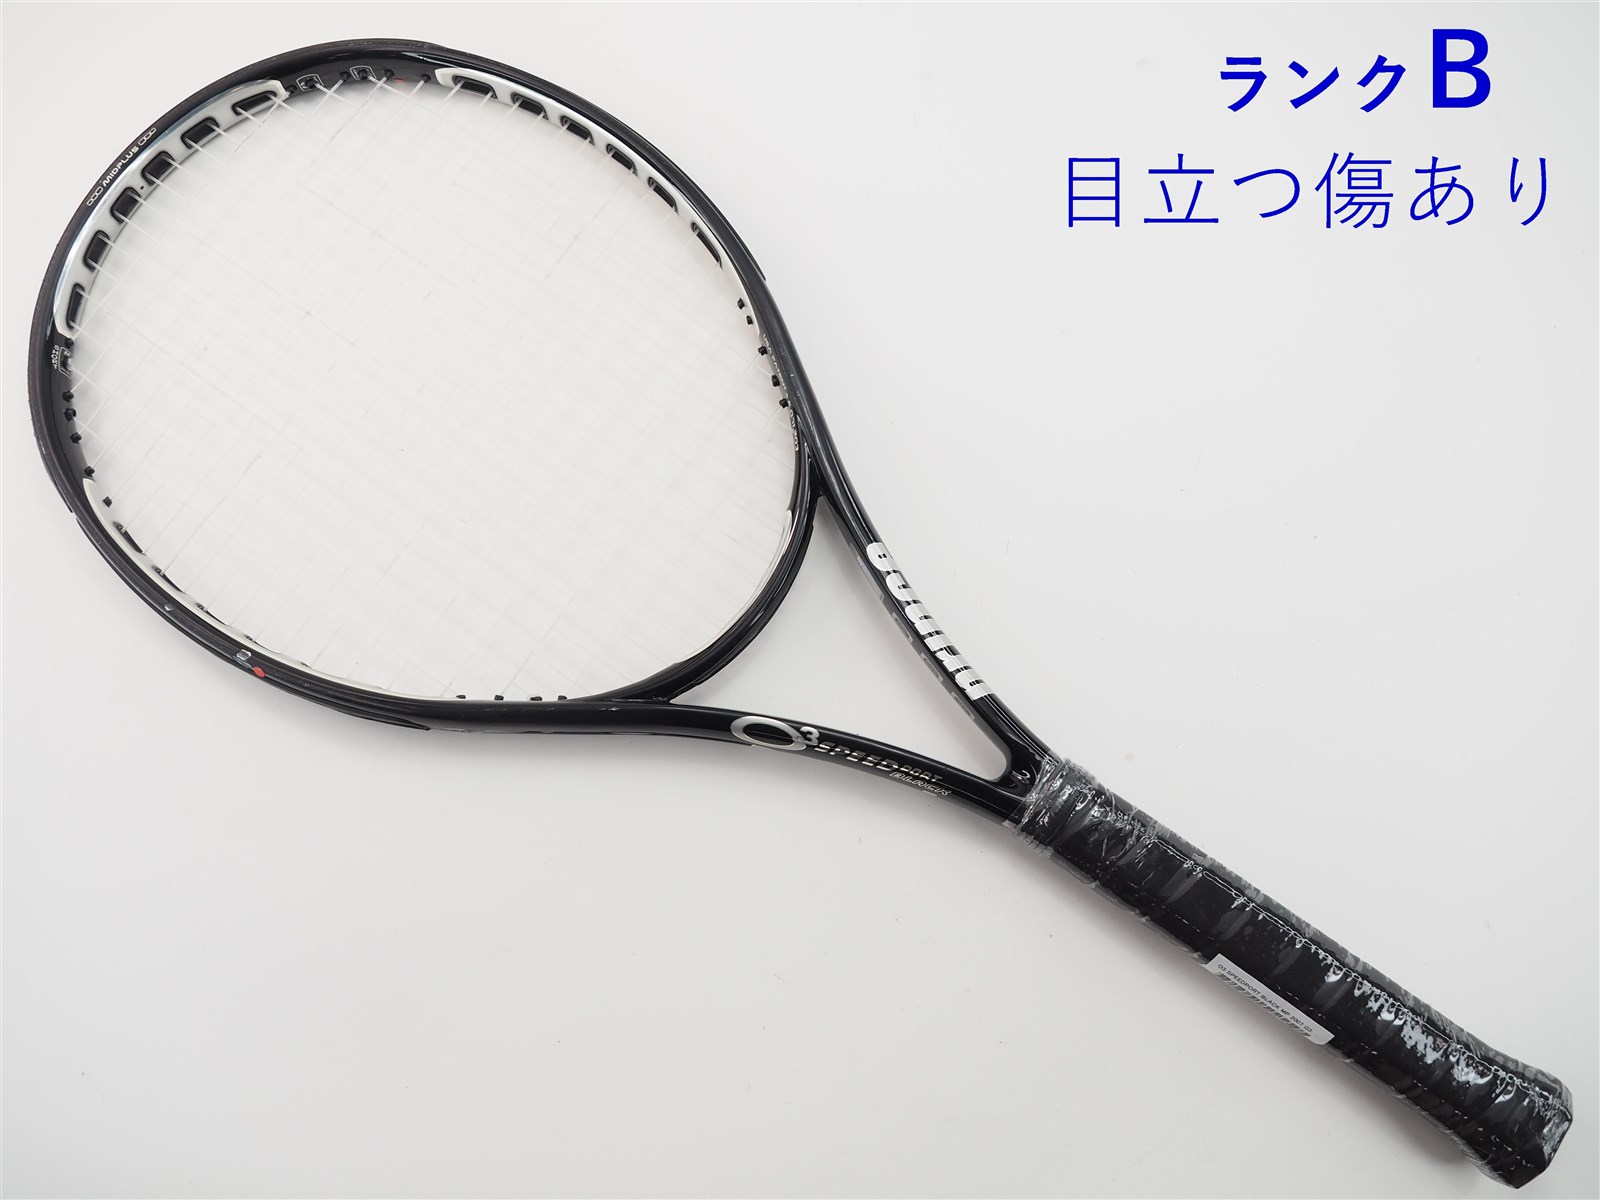 テニスラケット プリンス オースリー スピードポート ブラック MP (G2)PRINCE O3 SPEEDPORT BLACK MP